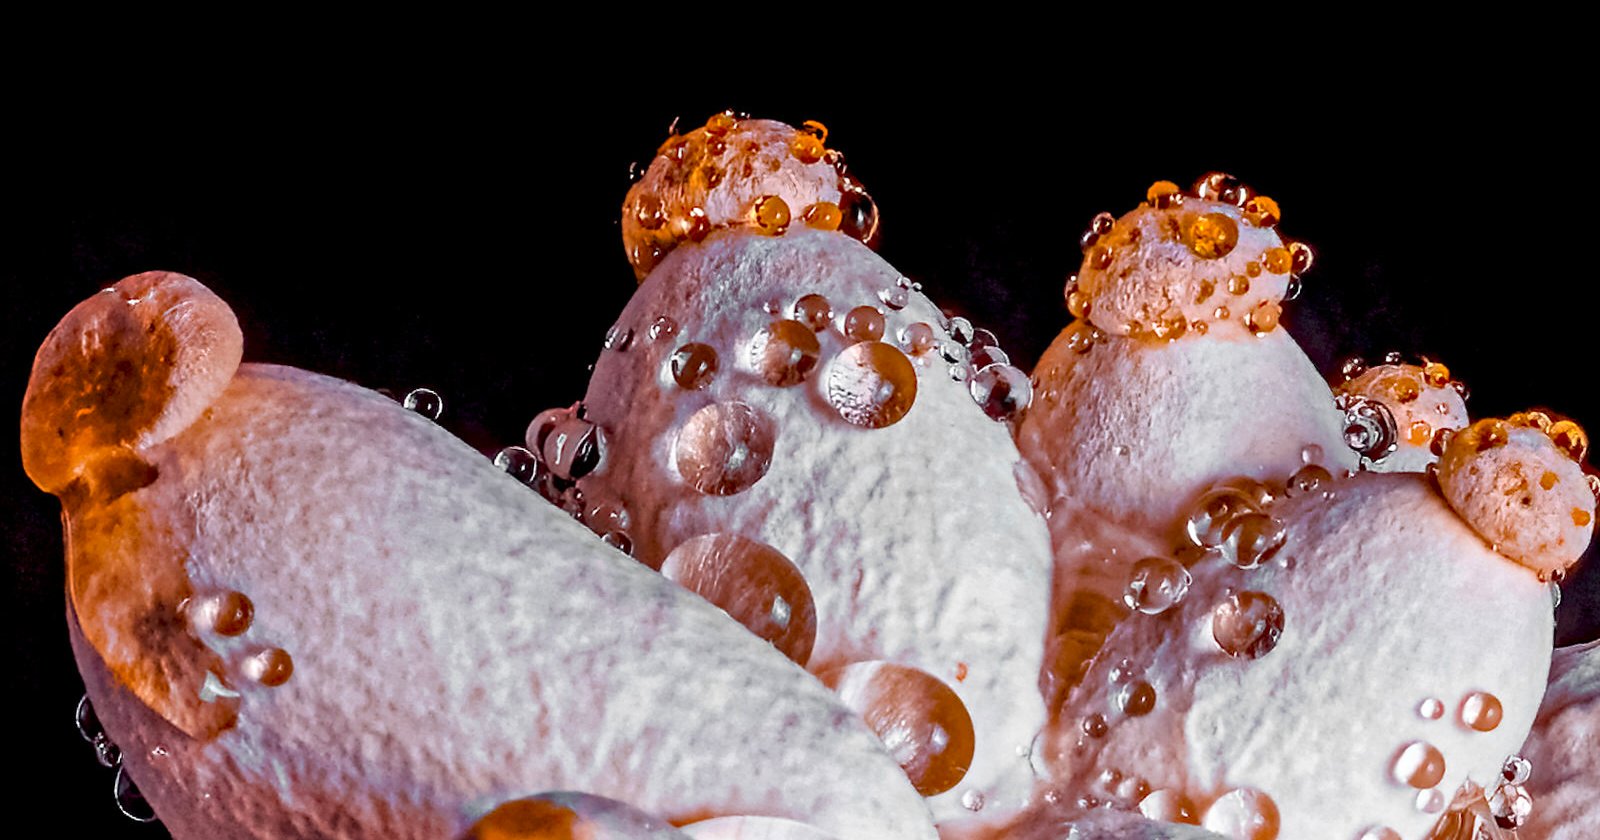 Jens Braun's mushroom macro photo